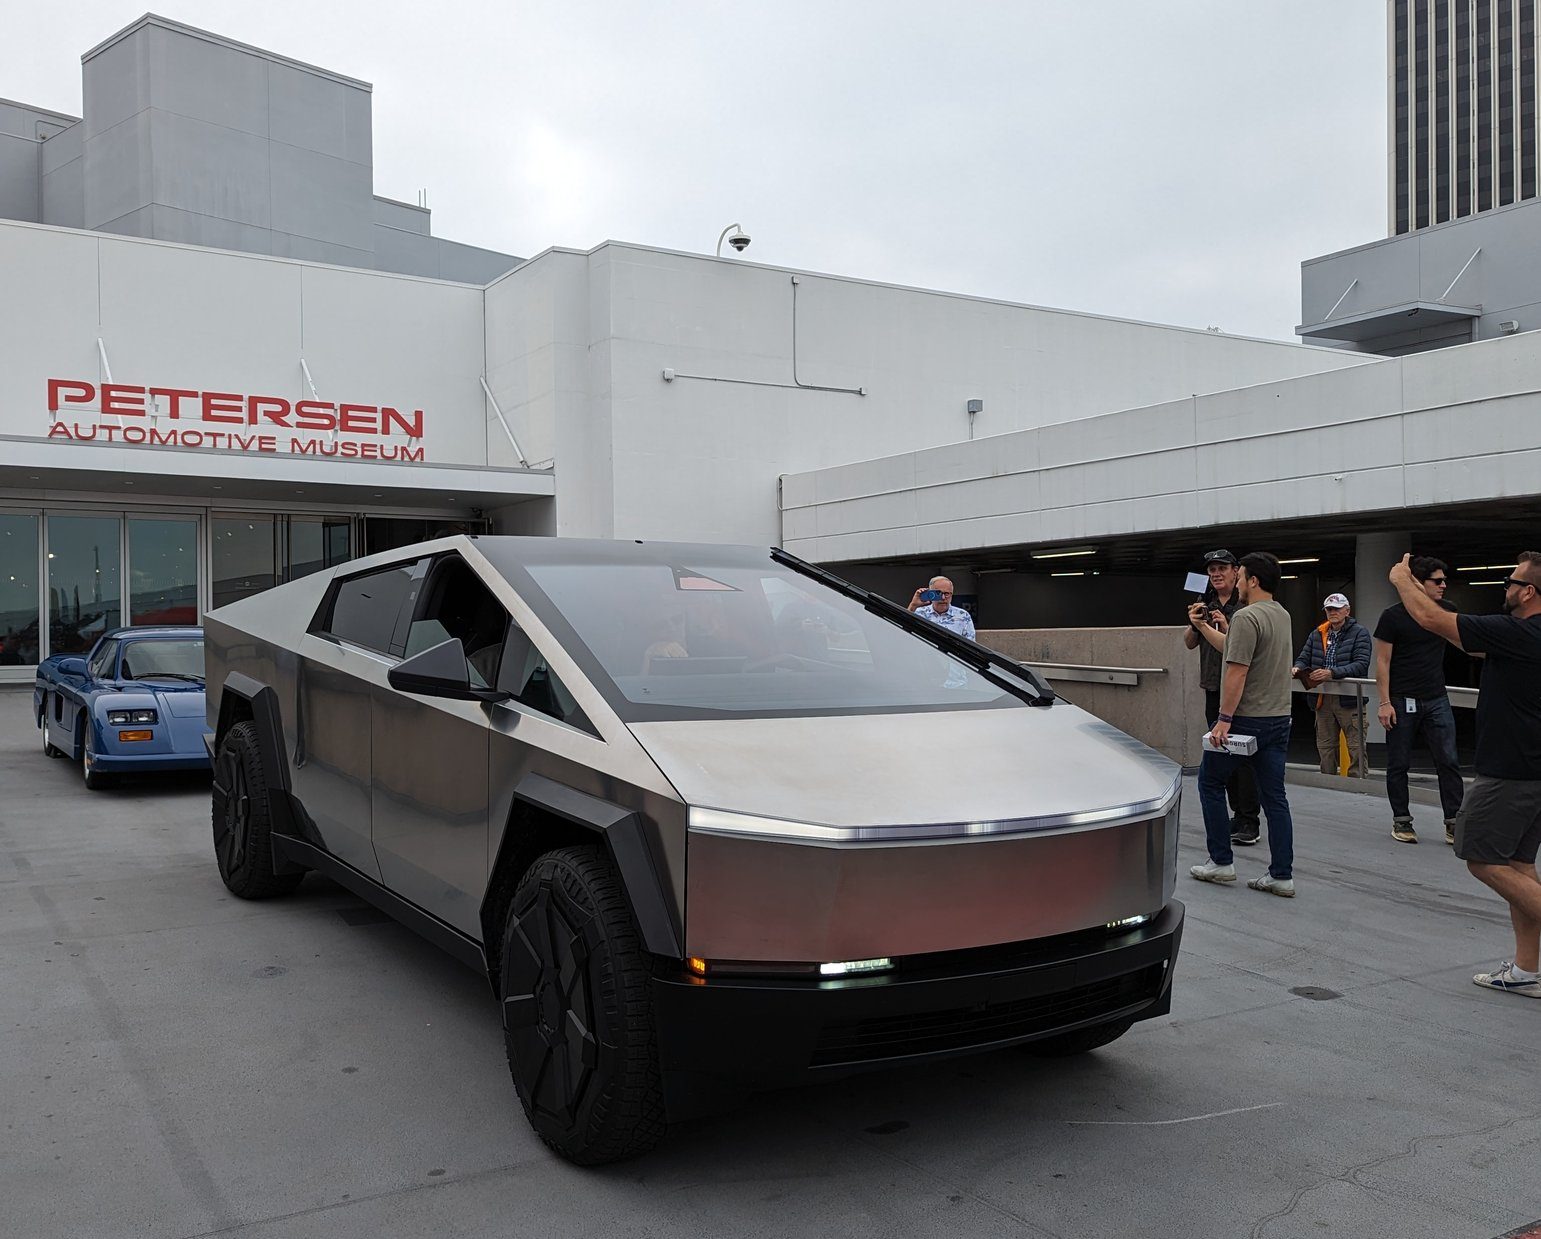 Tesla Cybertruck looks production ready in Petersen Museum visit